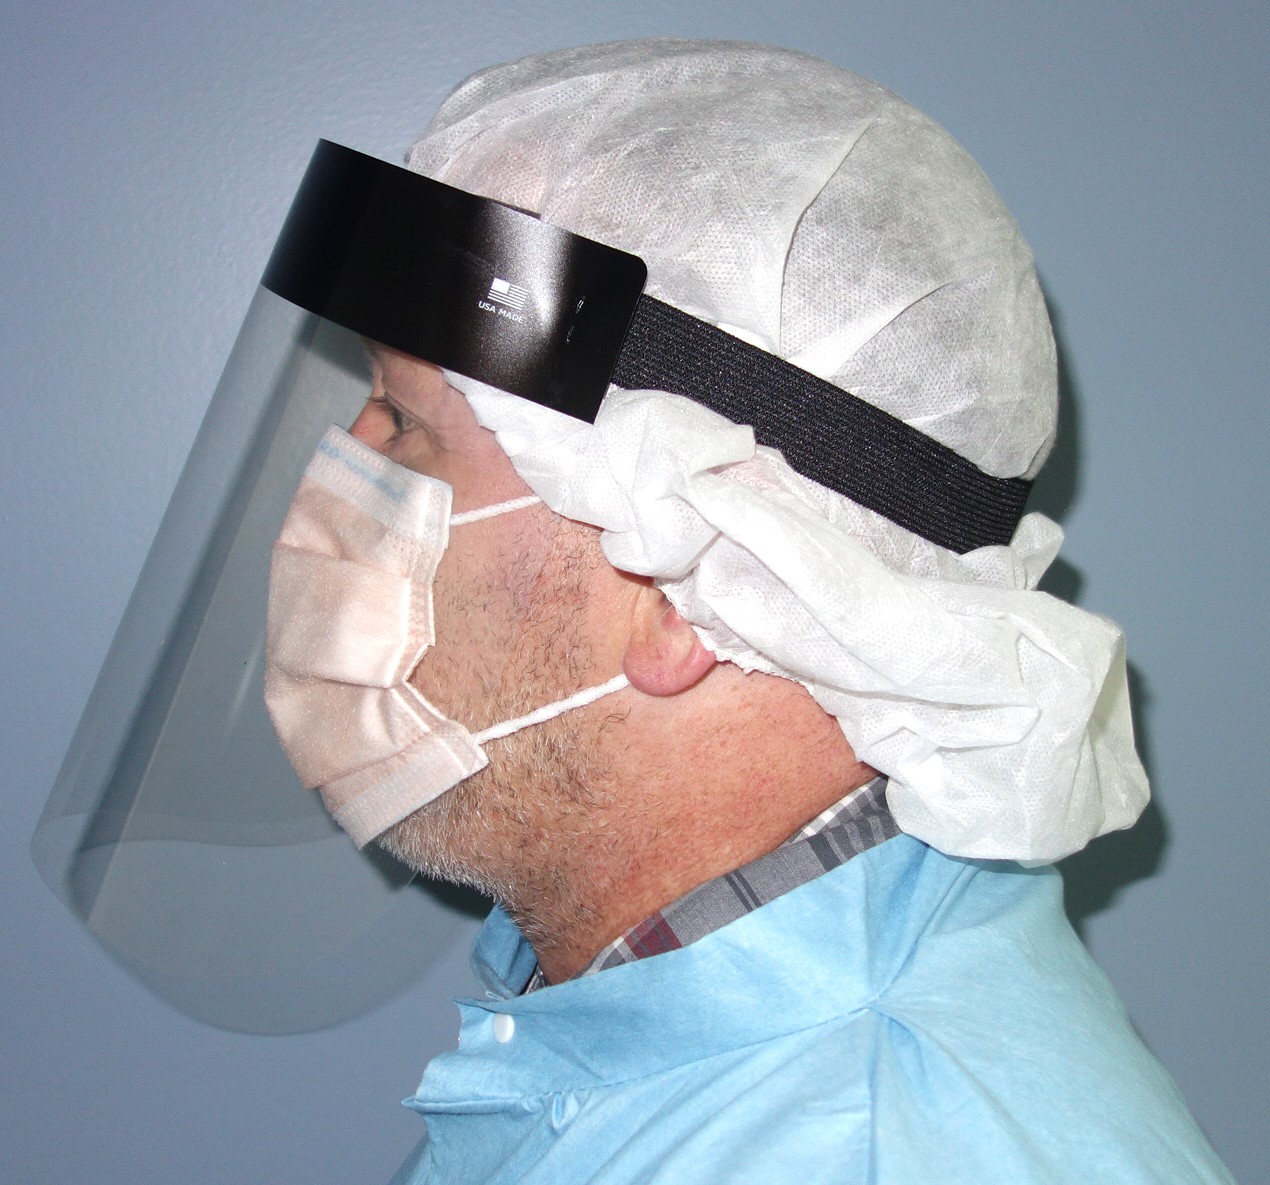 Halyard #47107 ASTM Level 3 Fog-Free Procedure Mask and Face Shield Bundle